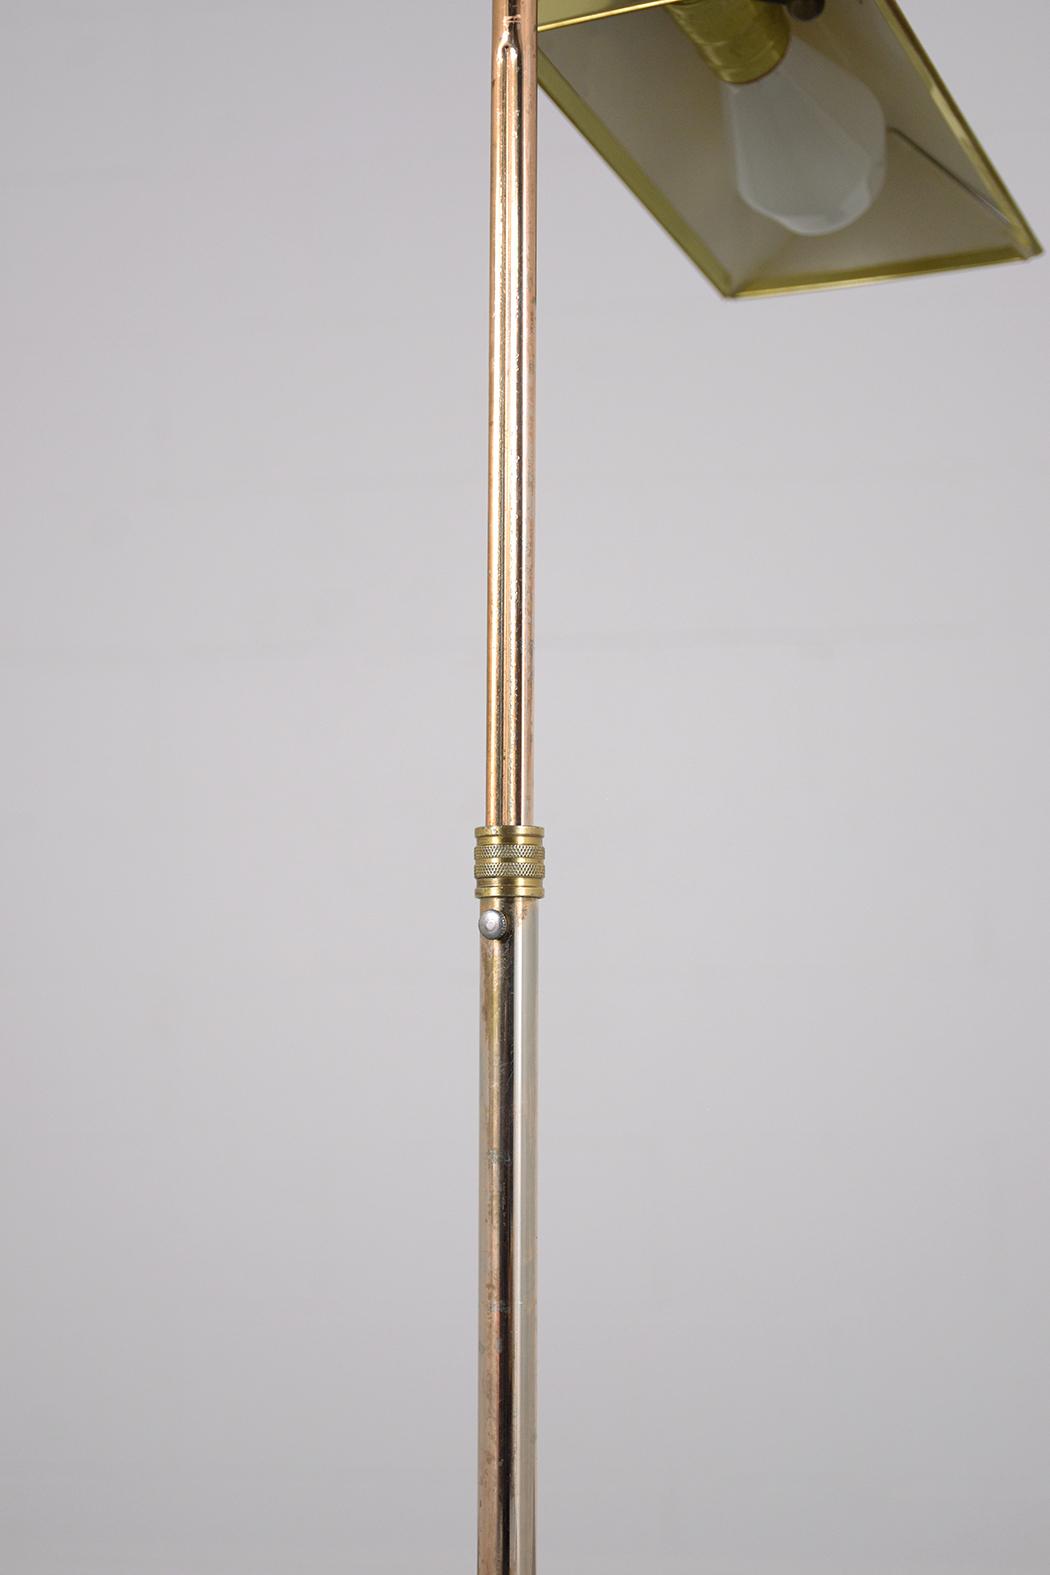 1960s Mid-Century Modern Adjustable Brass Floor Lamp